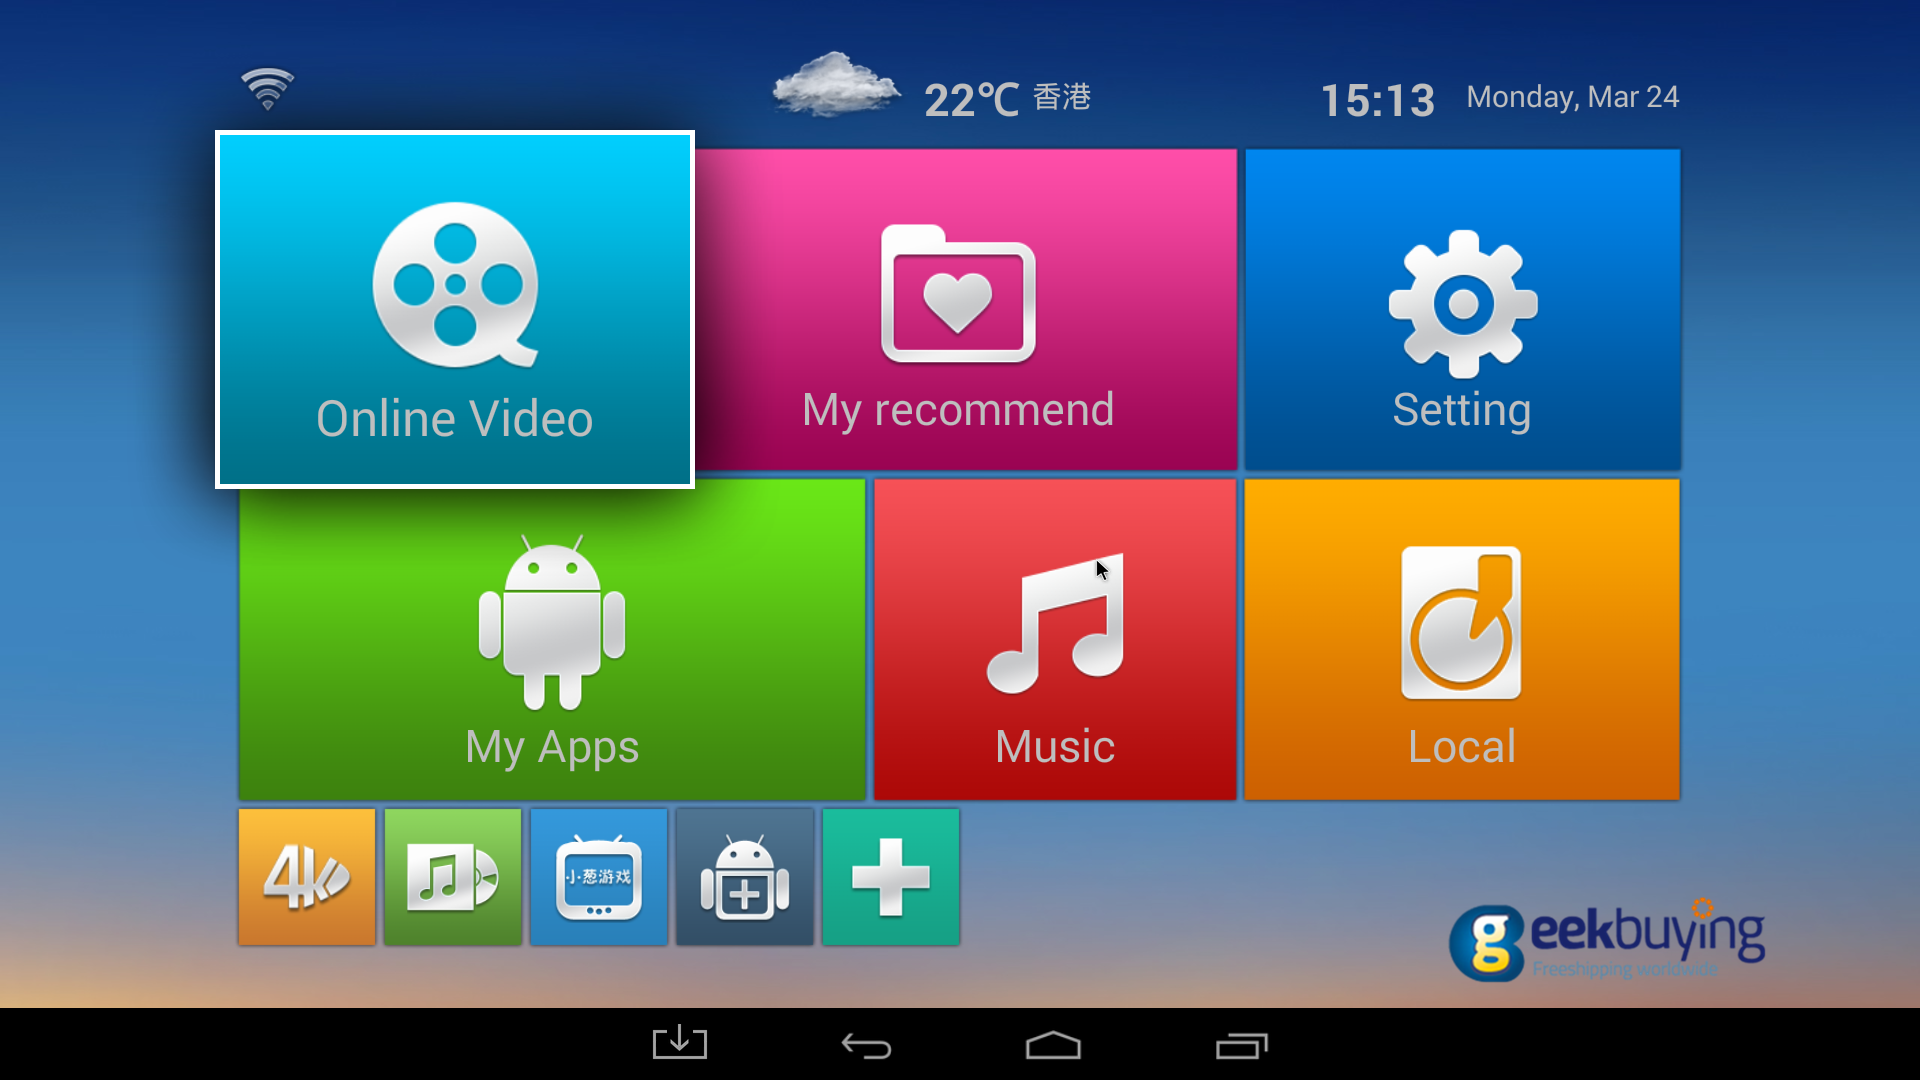 [Product Review] Tronsmart Vega S89 Amlogic S802 Quad Core Android 4.4 Kitkat TV BOX Review